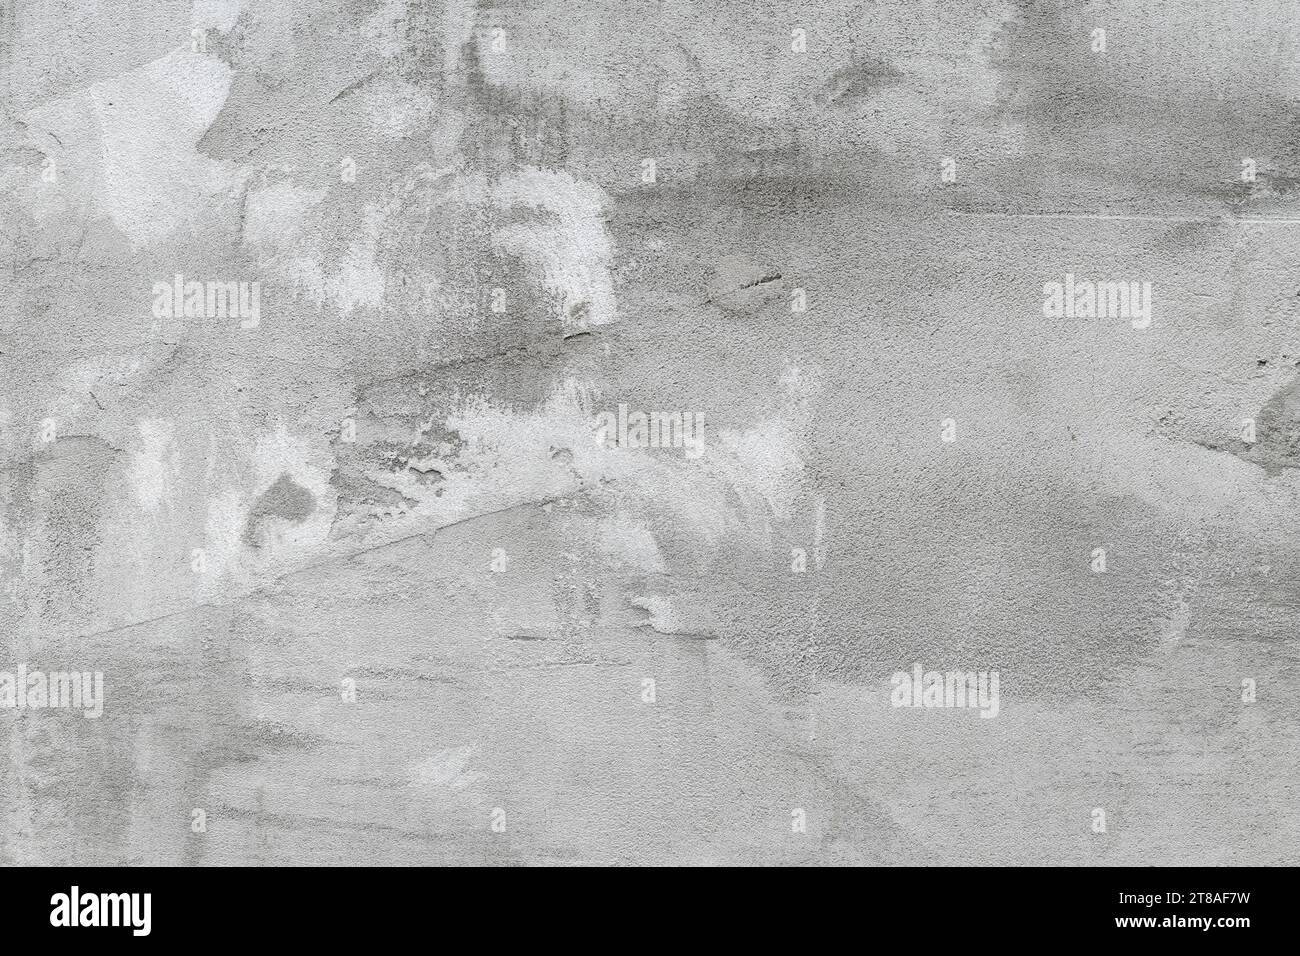 Intonaco esterno immagini e fotografie stock ad alta risoluzione - Alamy